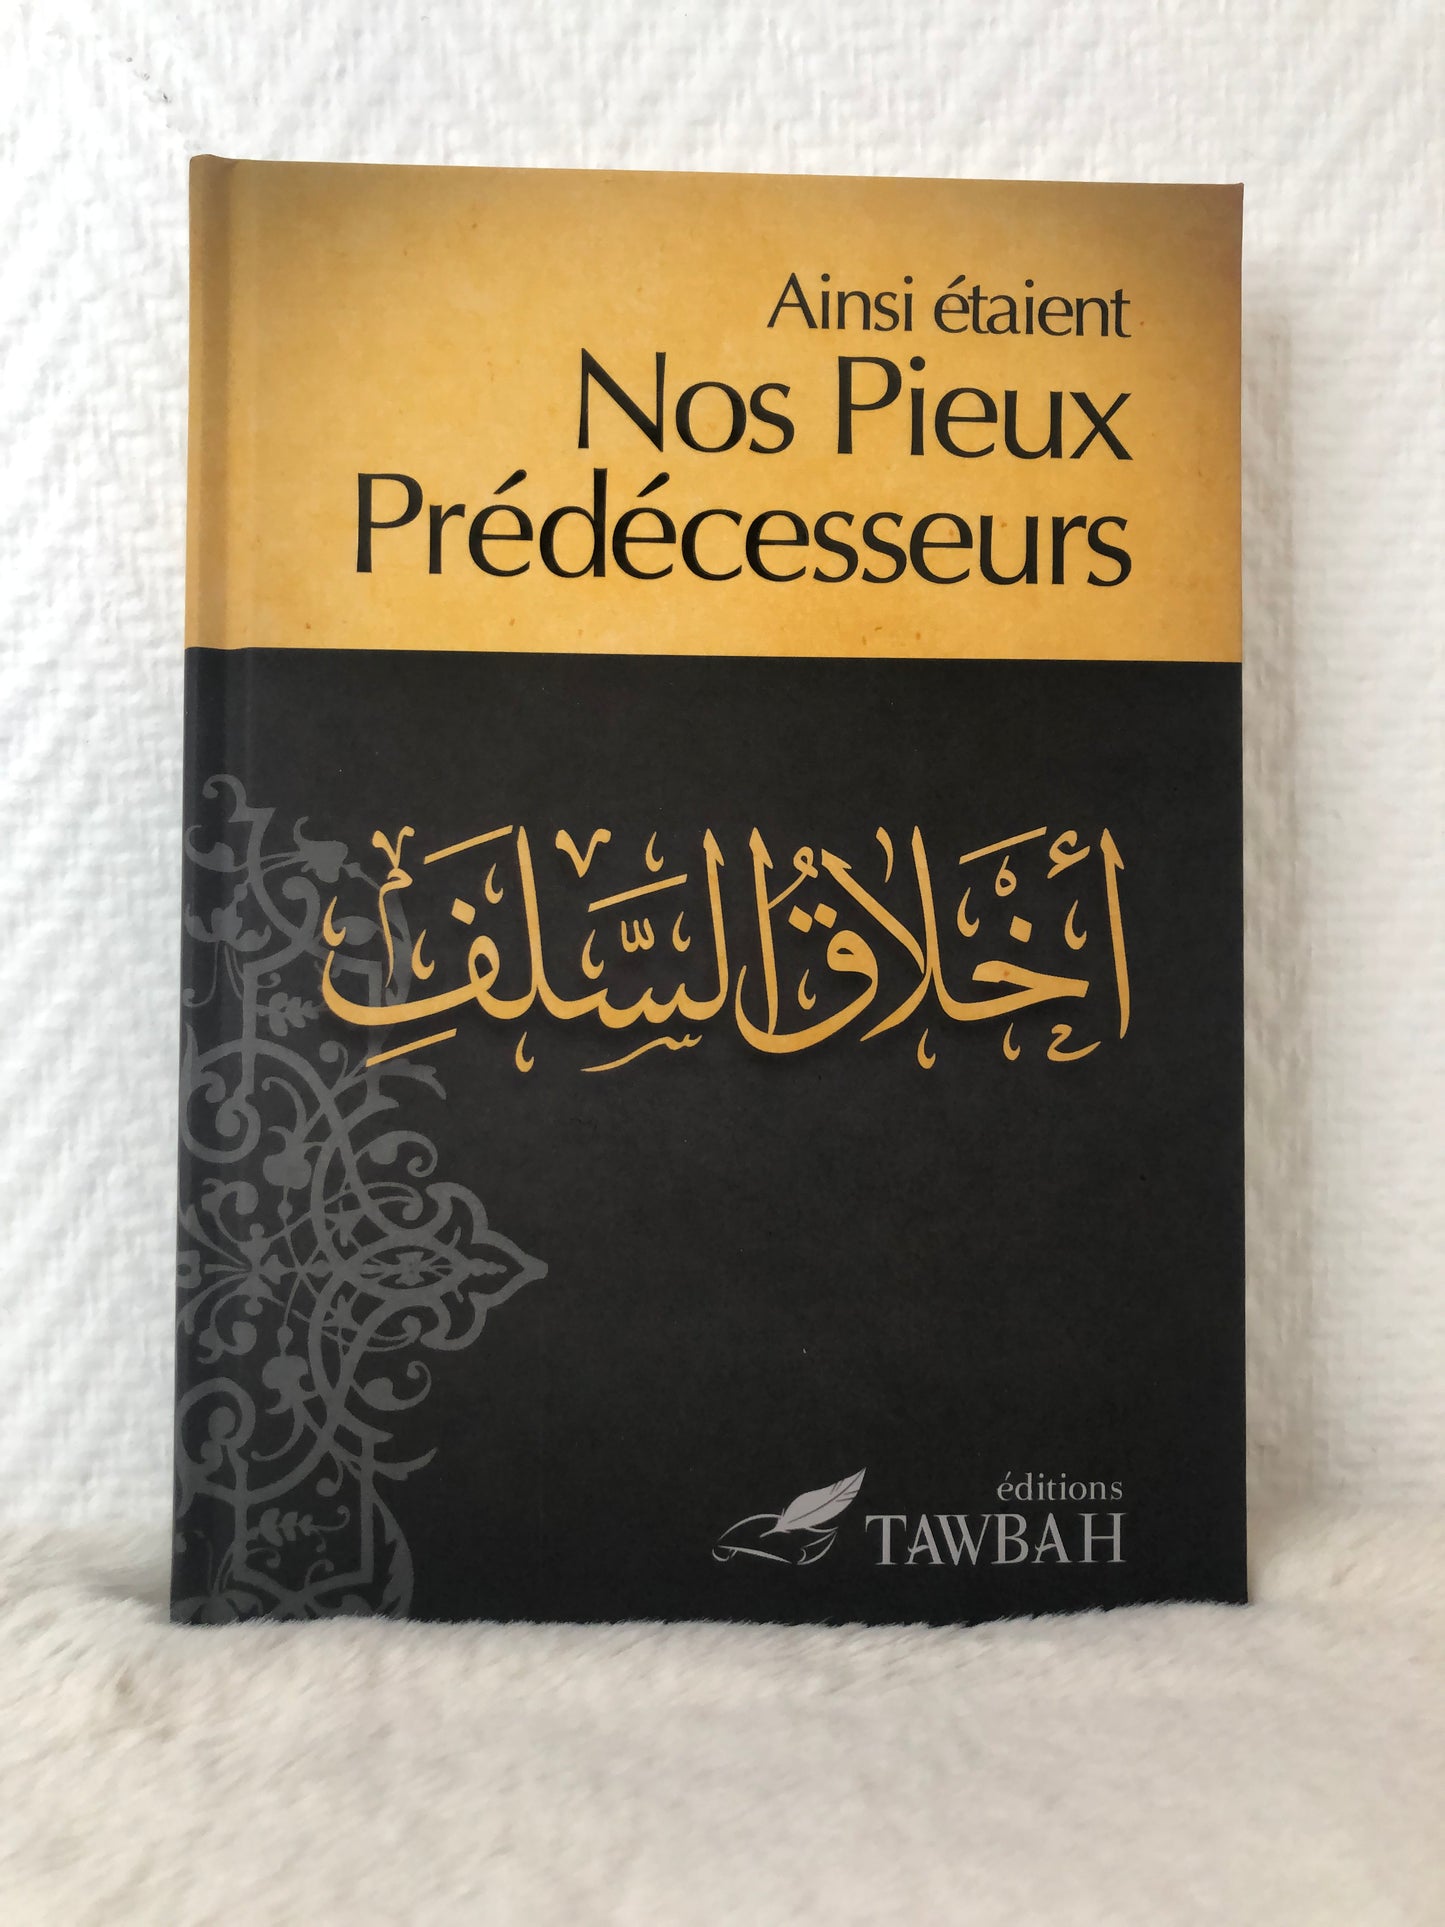 Ainsi étaient Nos Pieux Prédécesseurs,Compilation et traduction par Dr Nabil Aliouane